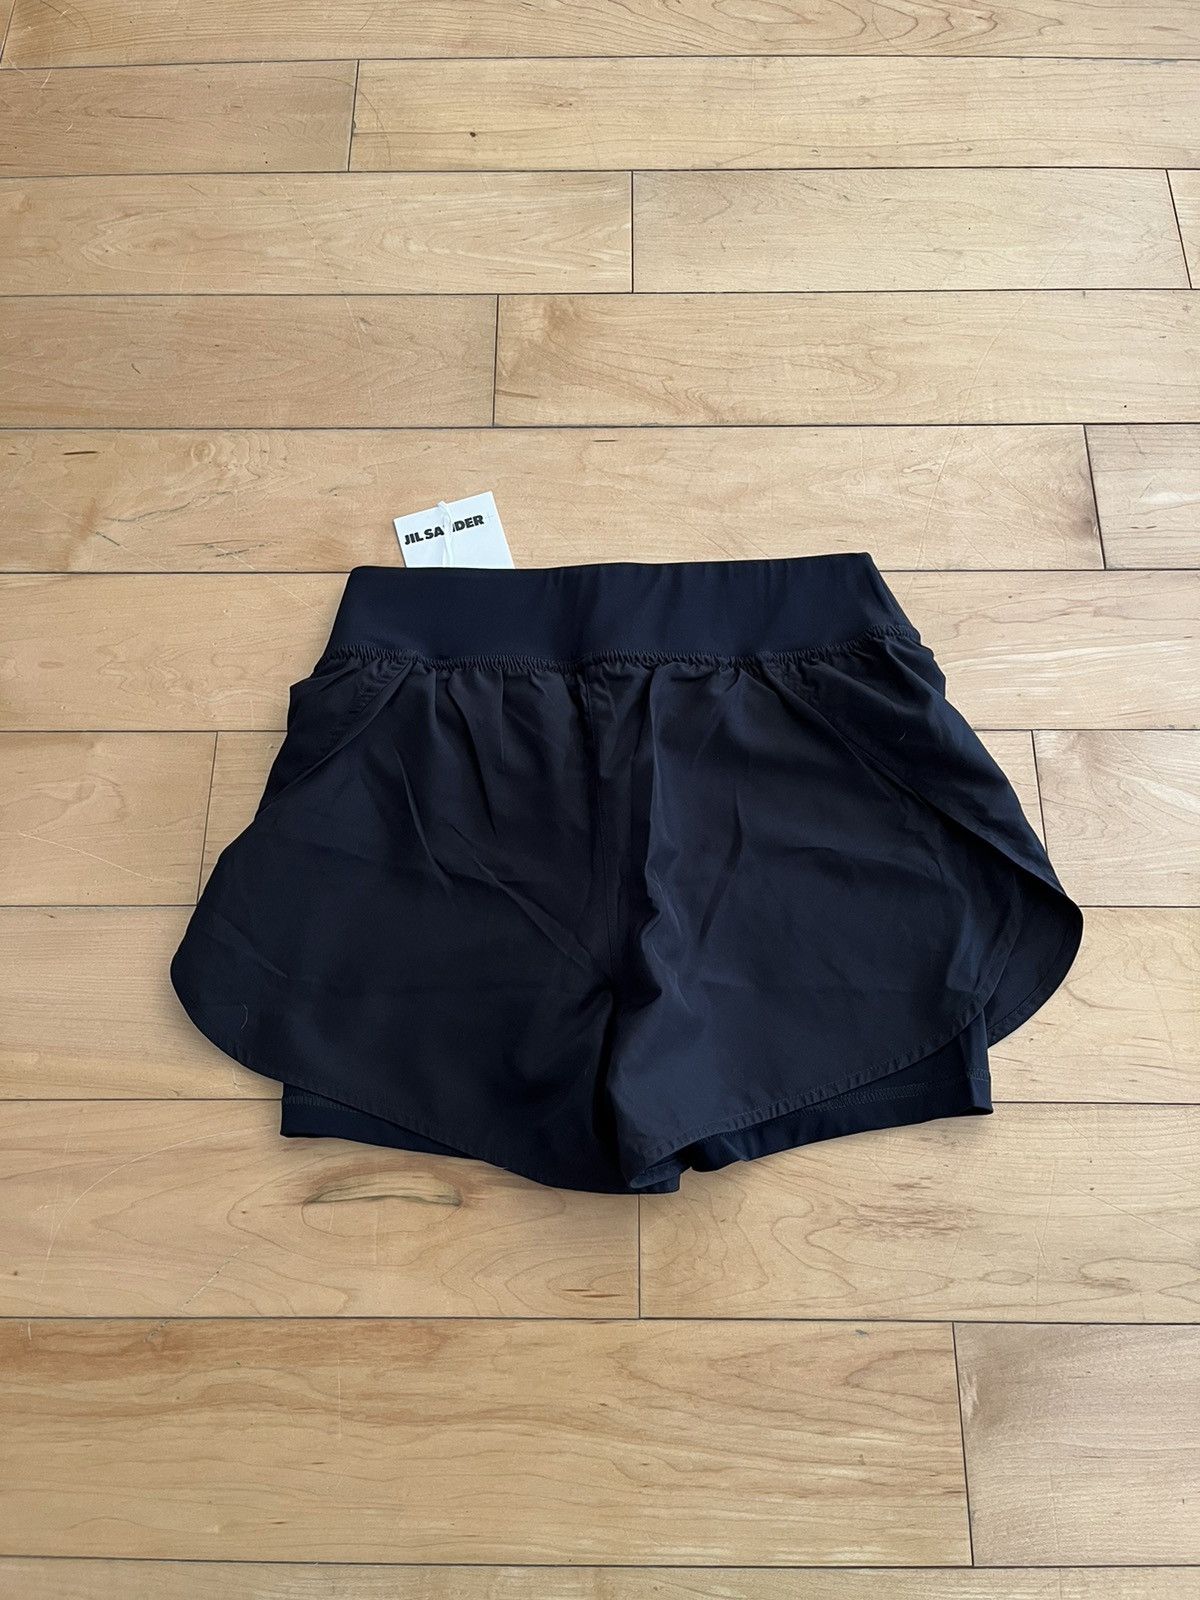 NWT - Jil Sander Nylon Sport Shorts - 4